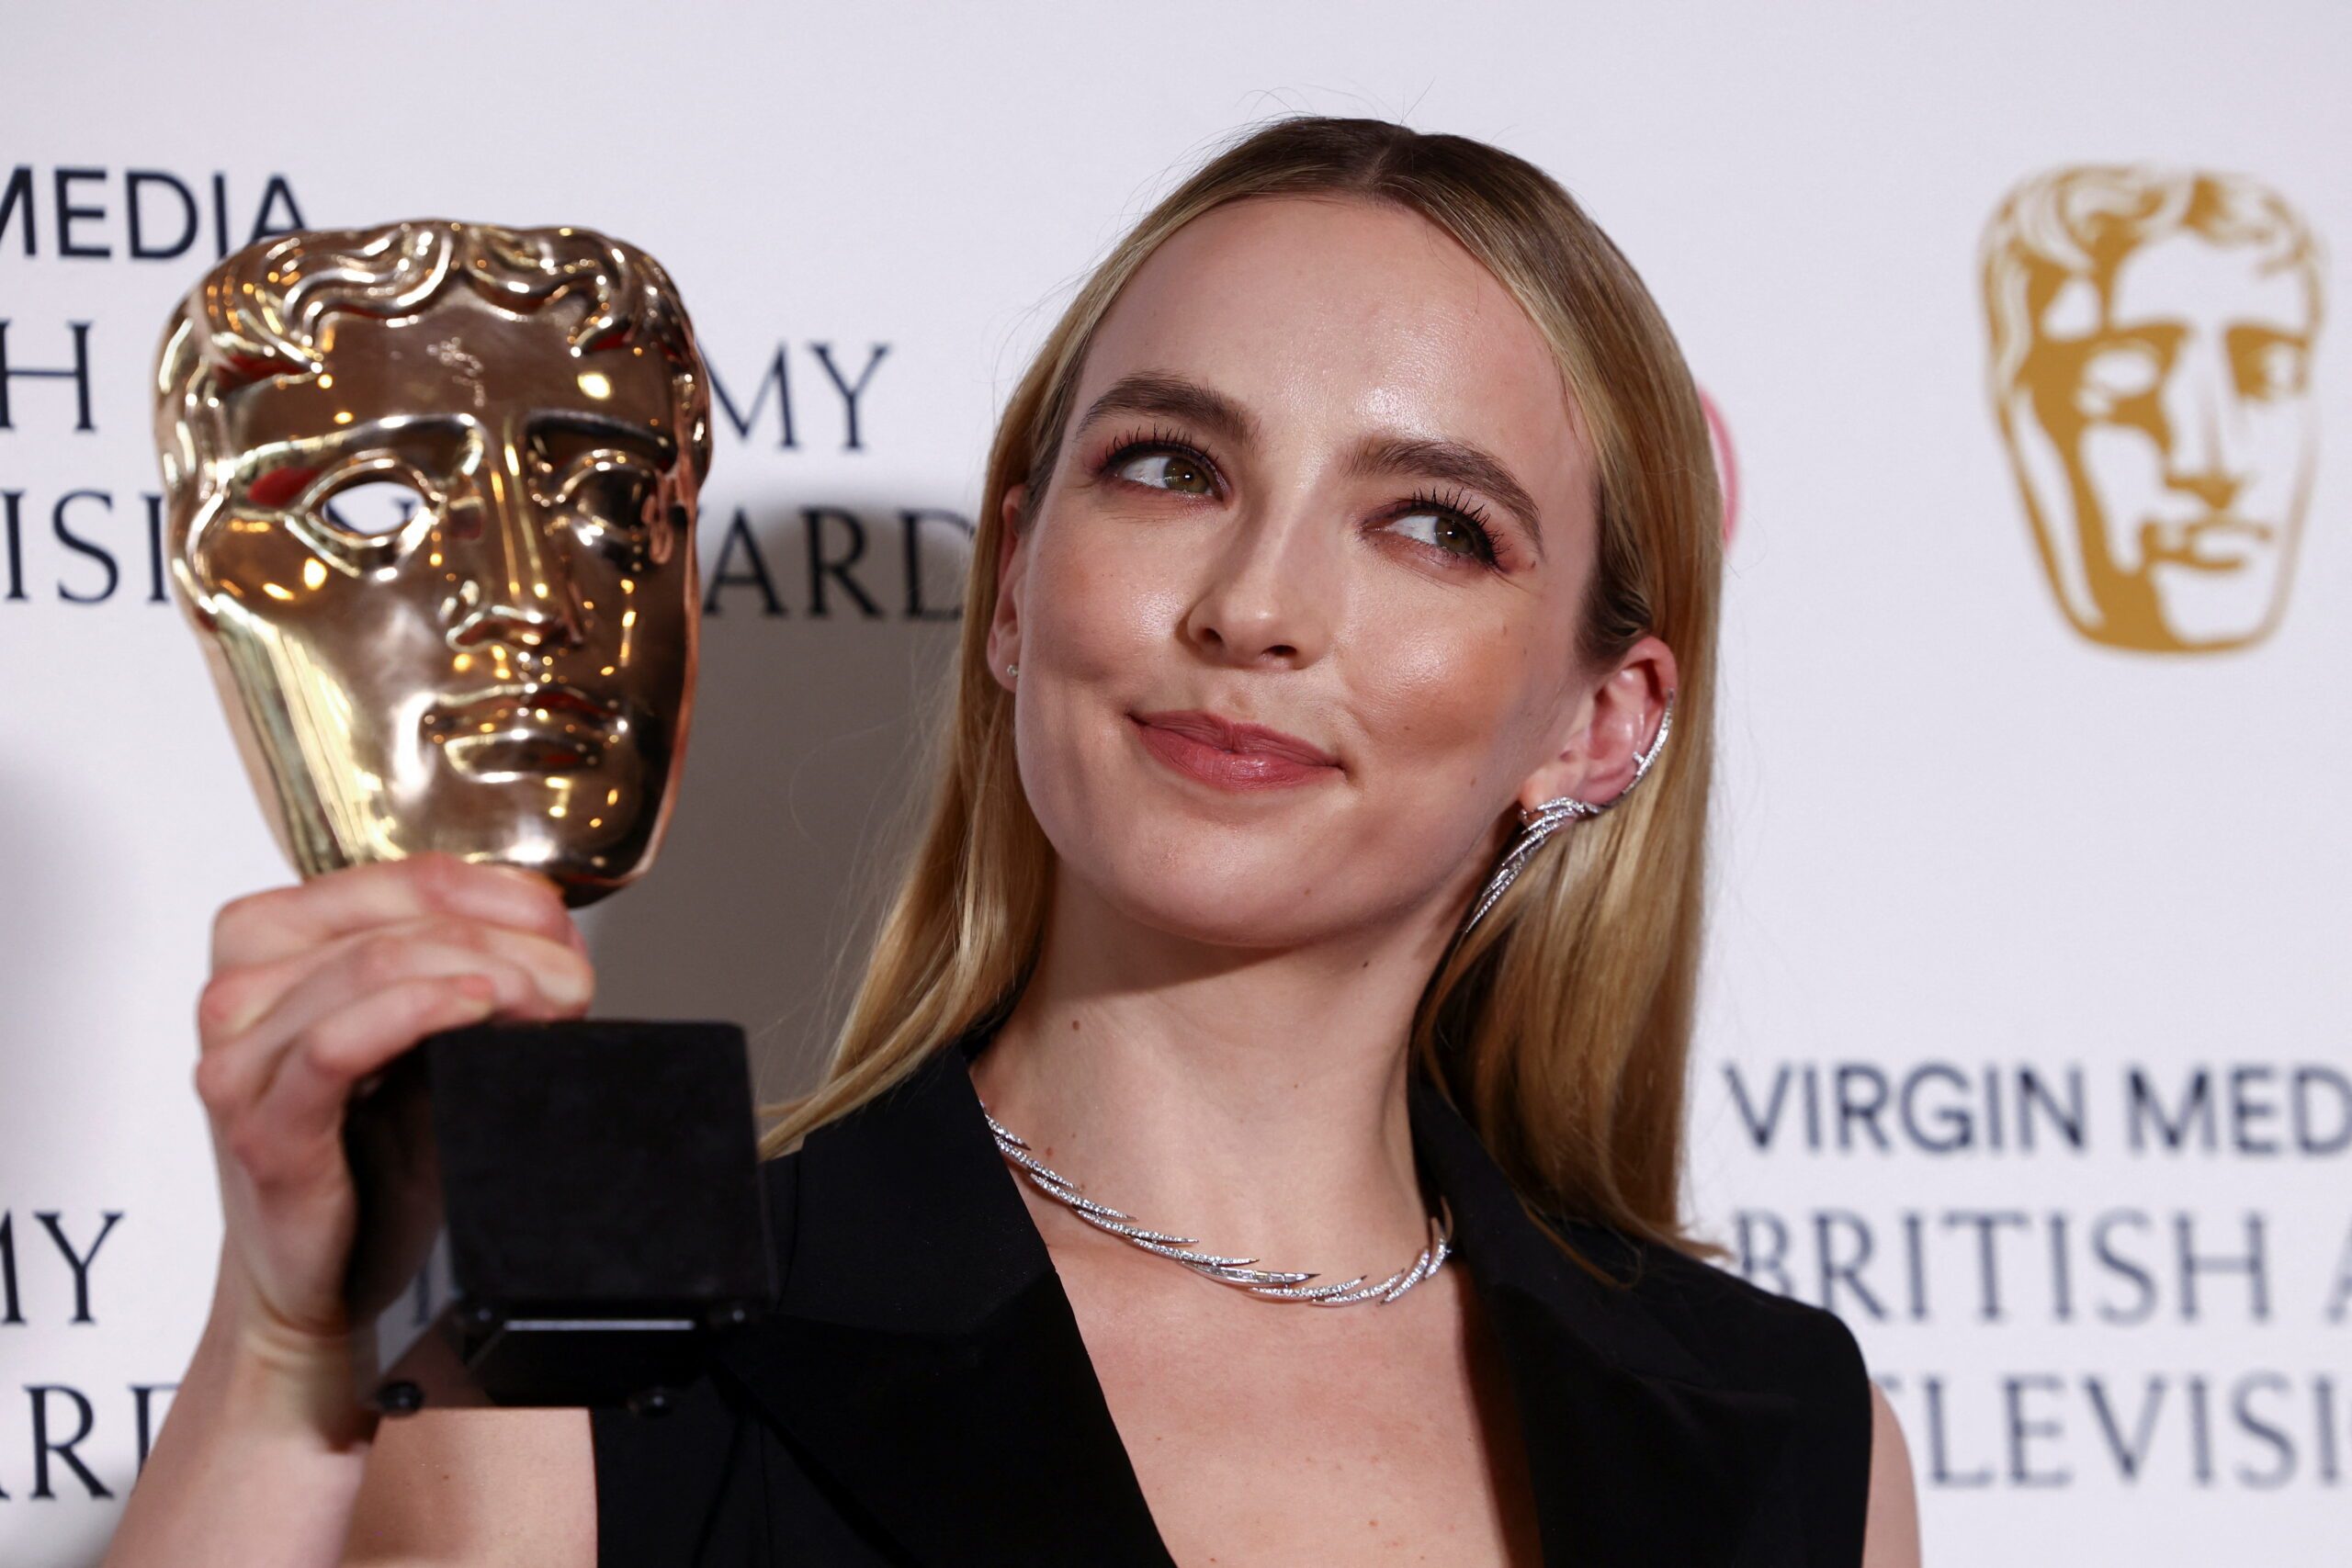 Comer, Bean, Macfadyen win at Britain’s BAFTA TV 2022 awards